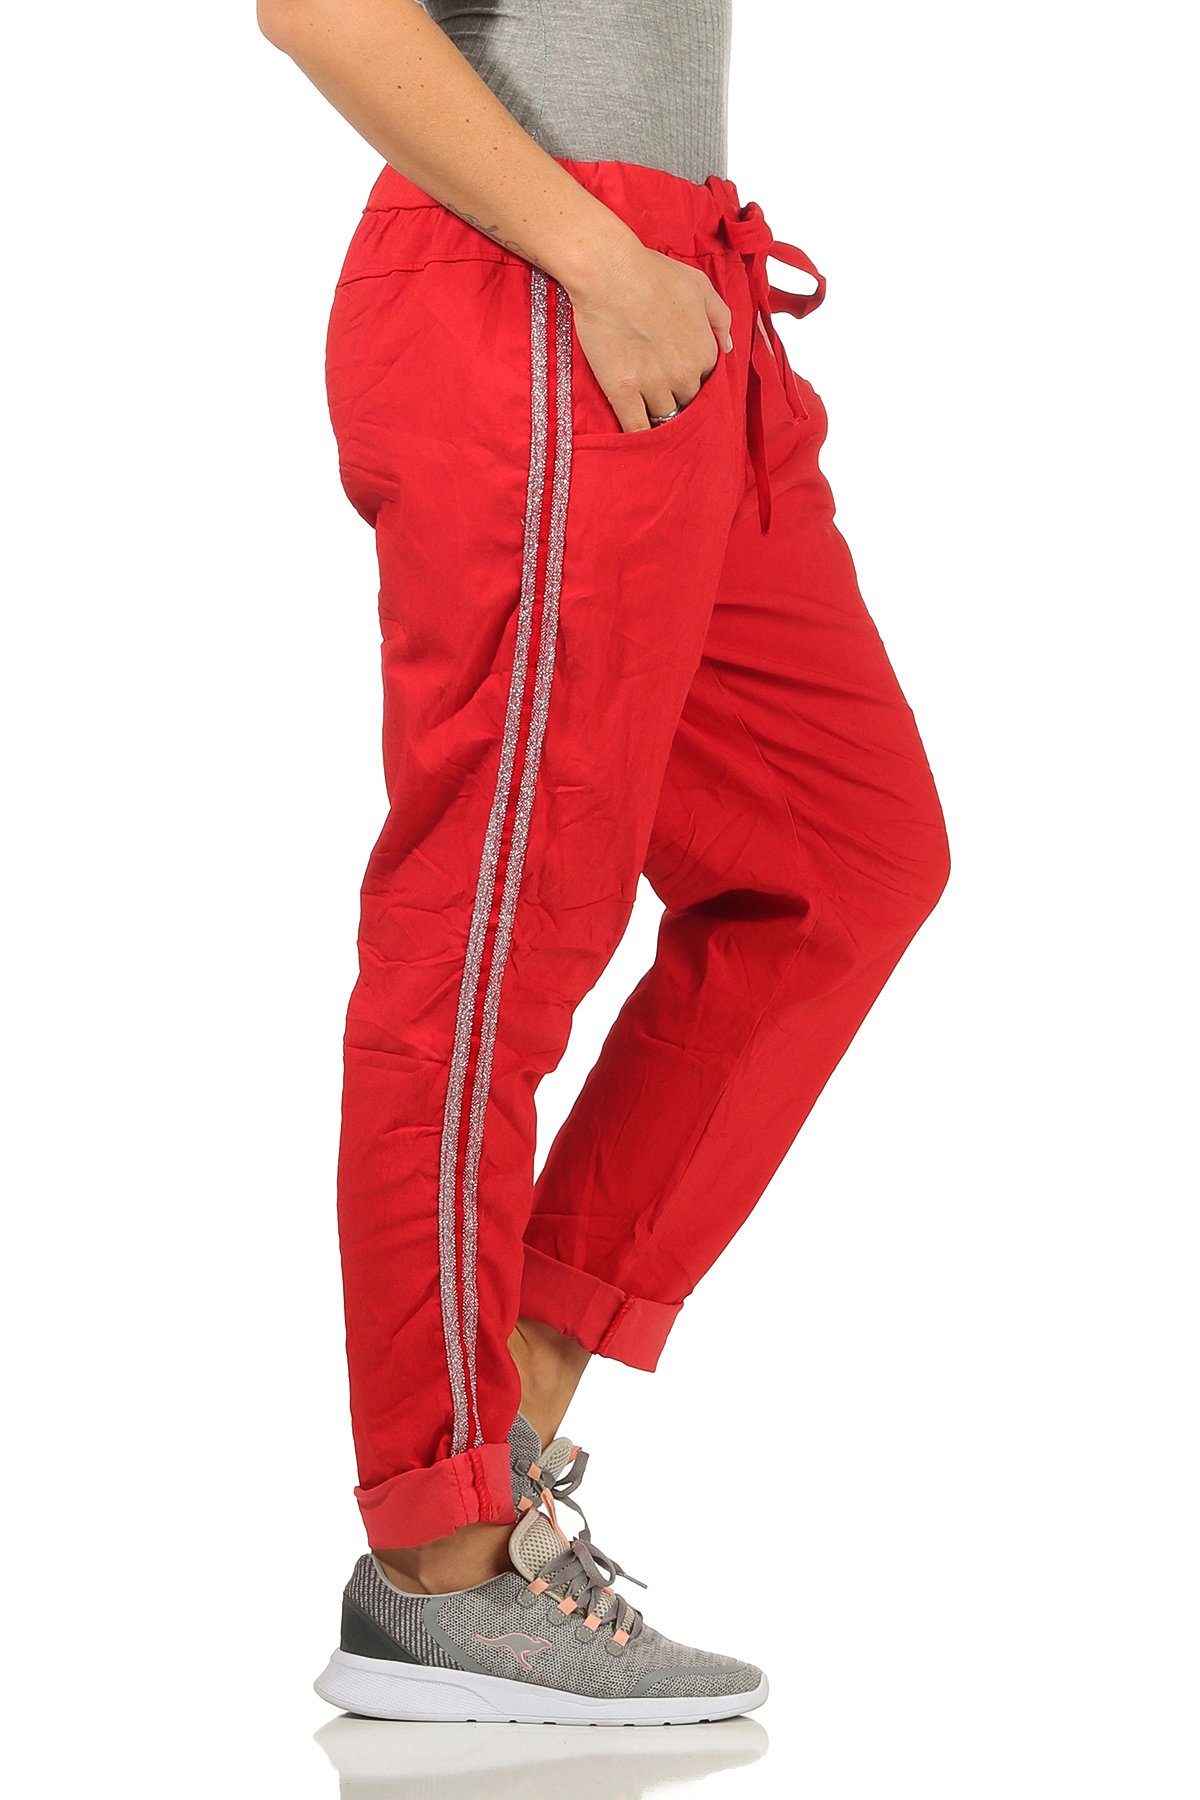 Mississhop Jogginghose Damen Hose Baumwollhose mit Seitlichen Silberstreifen M.348 Rot